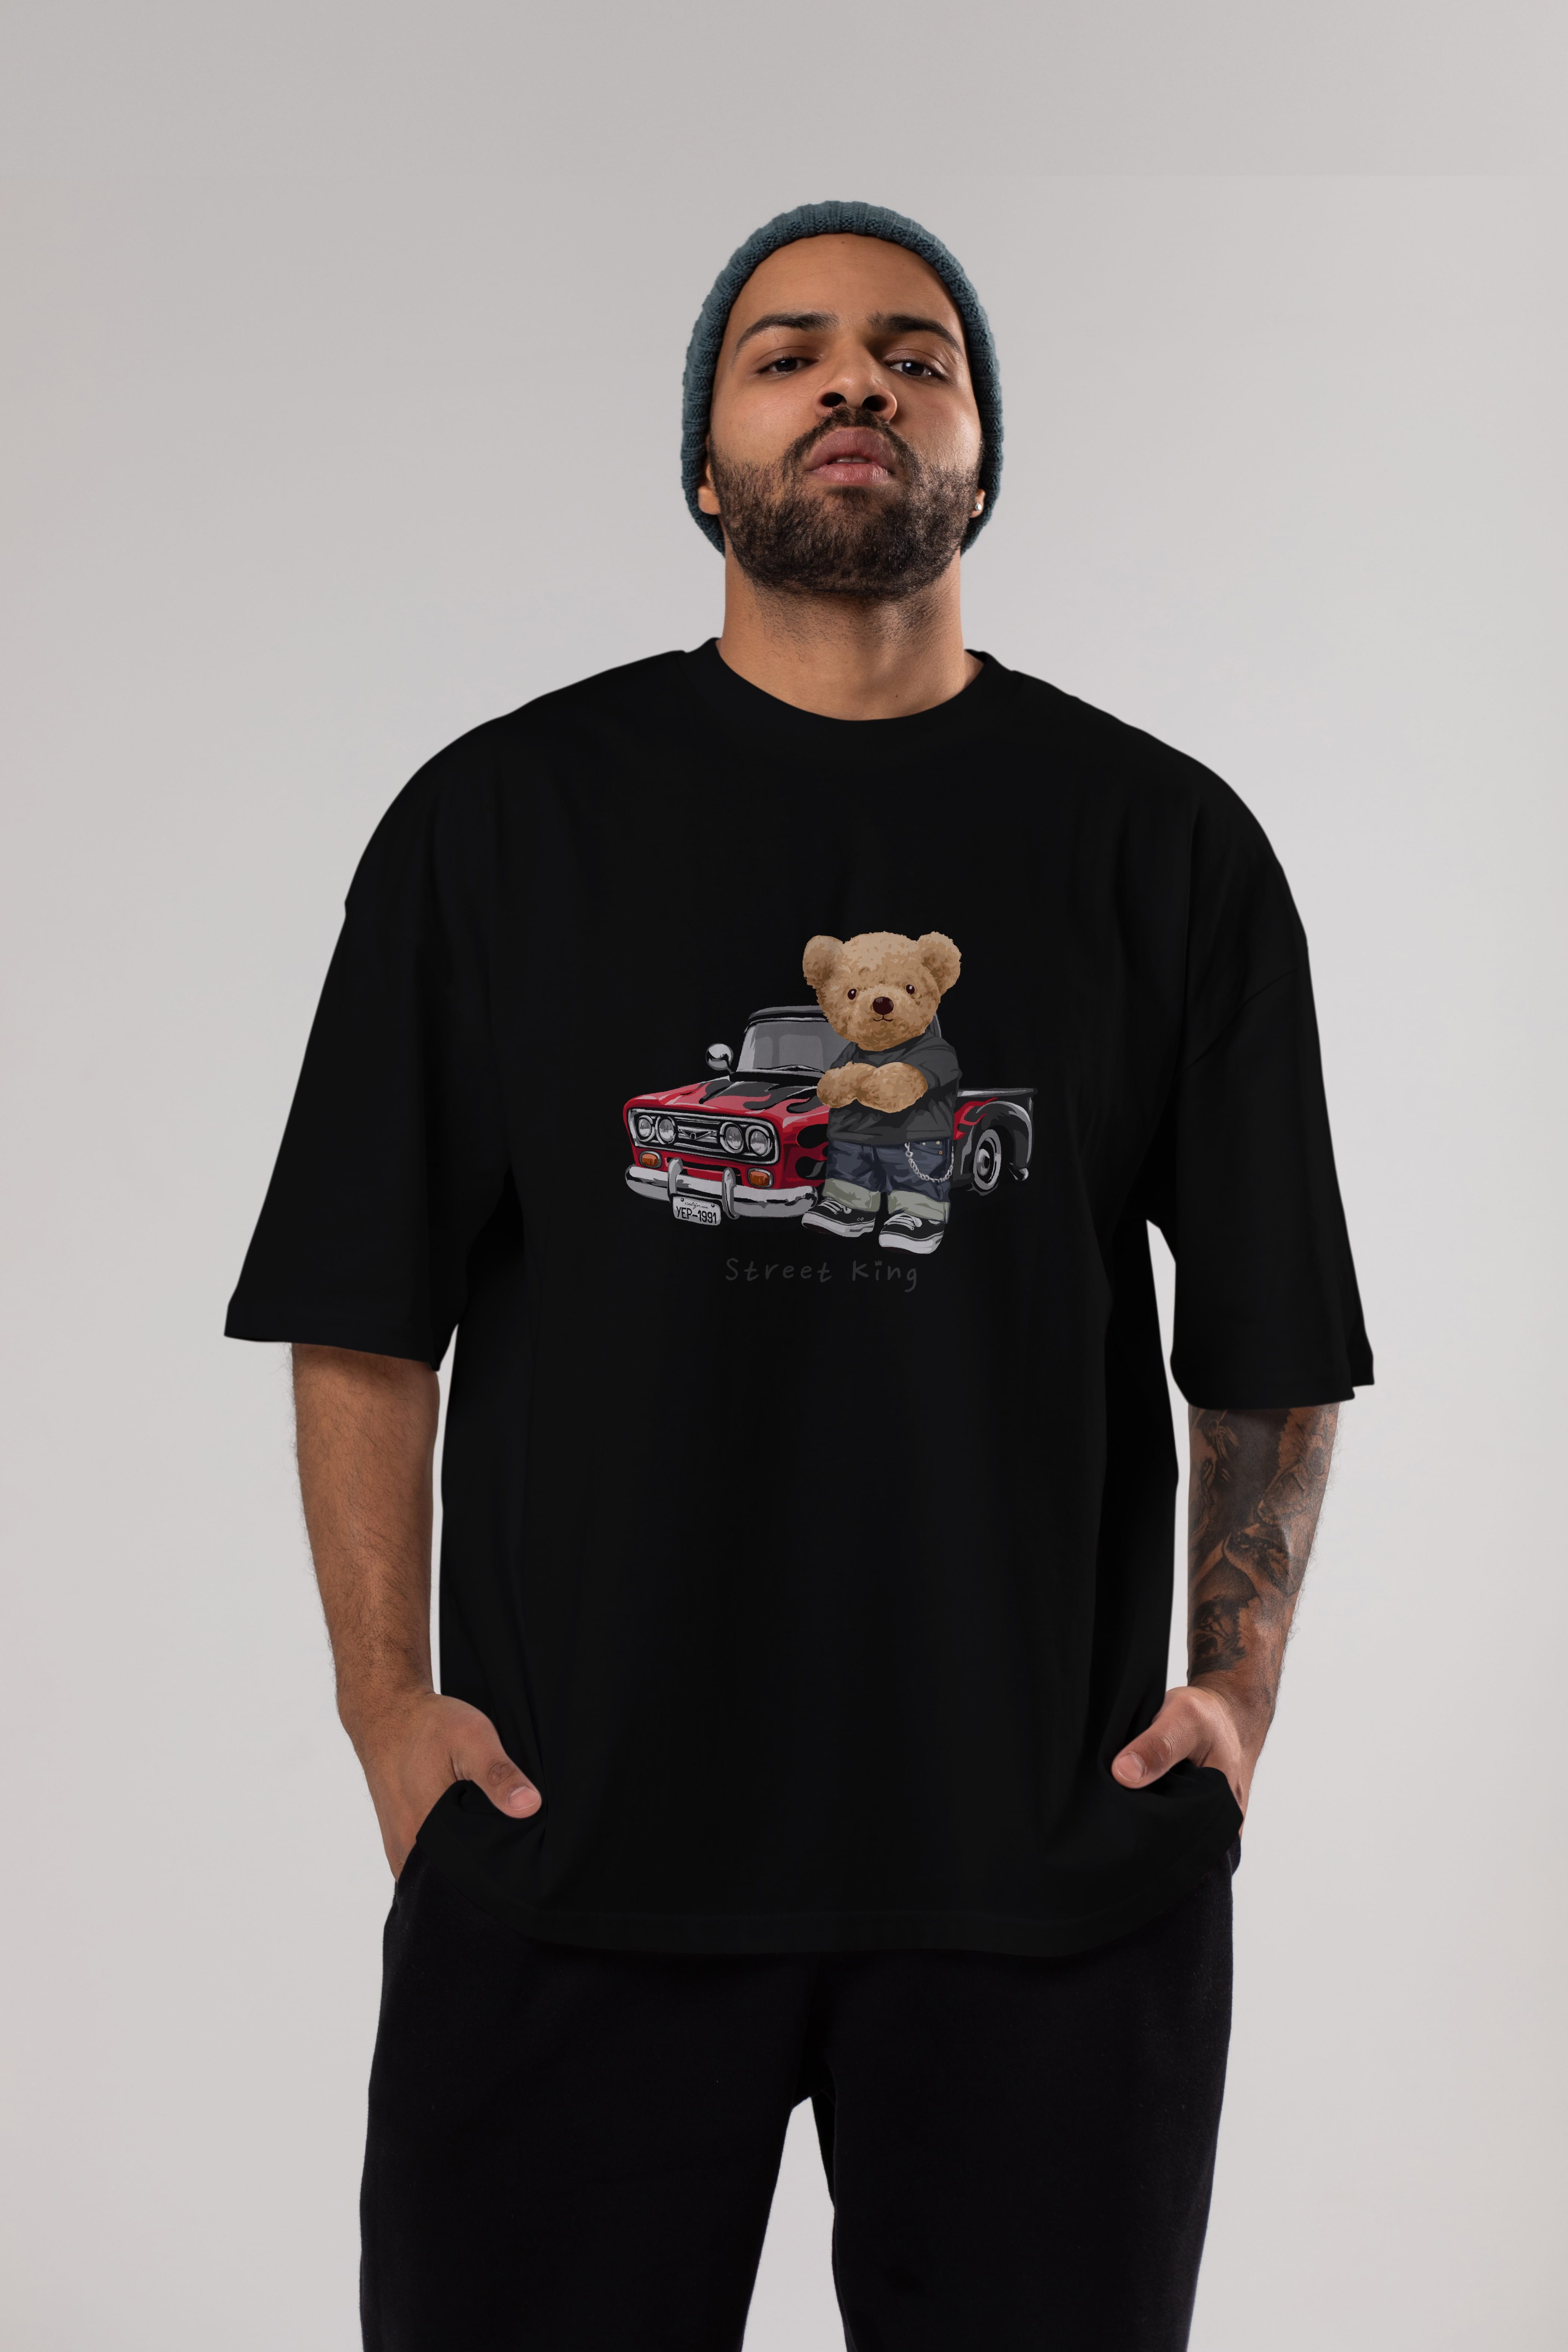 Teddy Bear Street King Ön Baskılı Oversize t-shirt Erkek Kadın Unisex %100 Pamuk